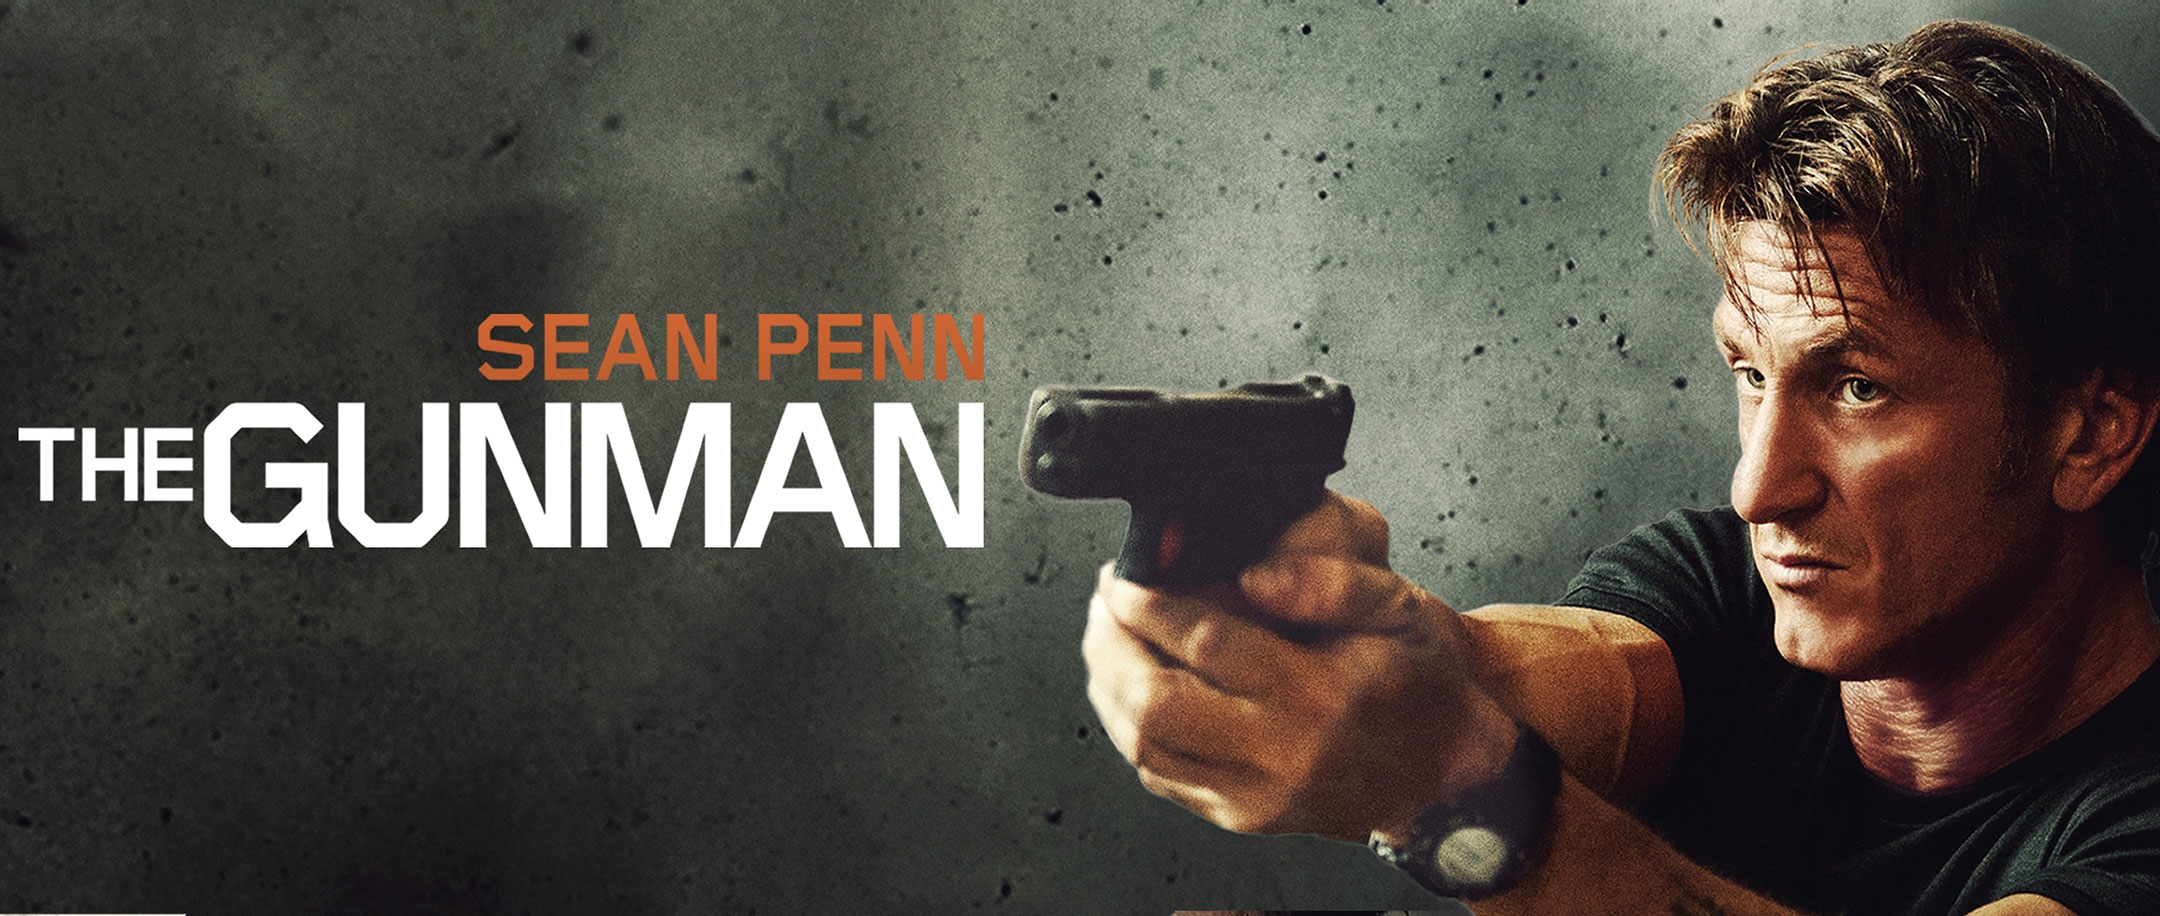 دانلود دوبله فارسی فیلم The Gunman 2015